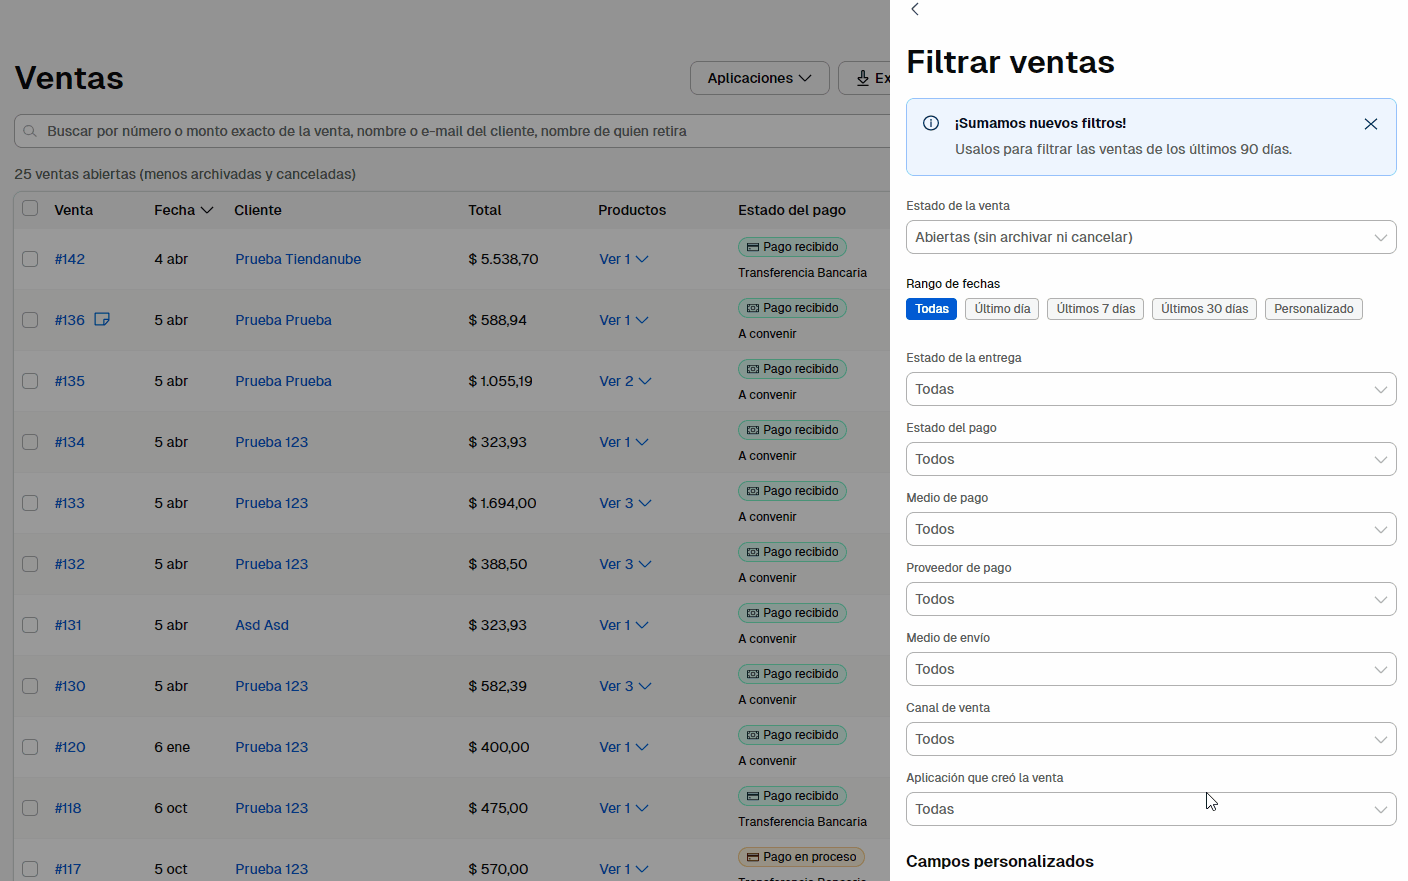 GIF mostrando dos filtros (por estado de la orden y medio de envío) siendo aplicados en la lista de ventas. Luego, se muestra el botón "Filtrar", el botón "Exportar resultados" y cómo se eliminan los filtros